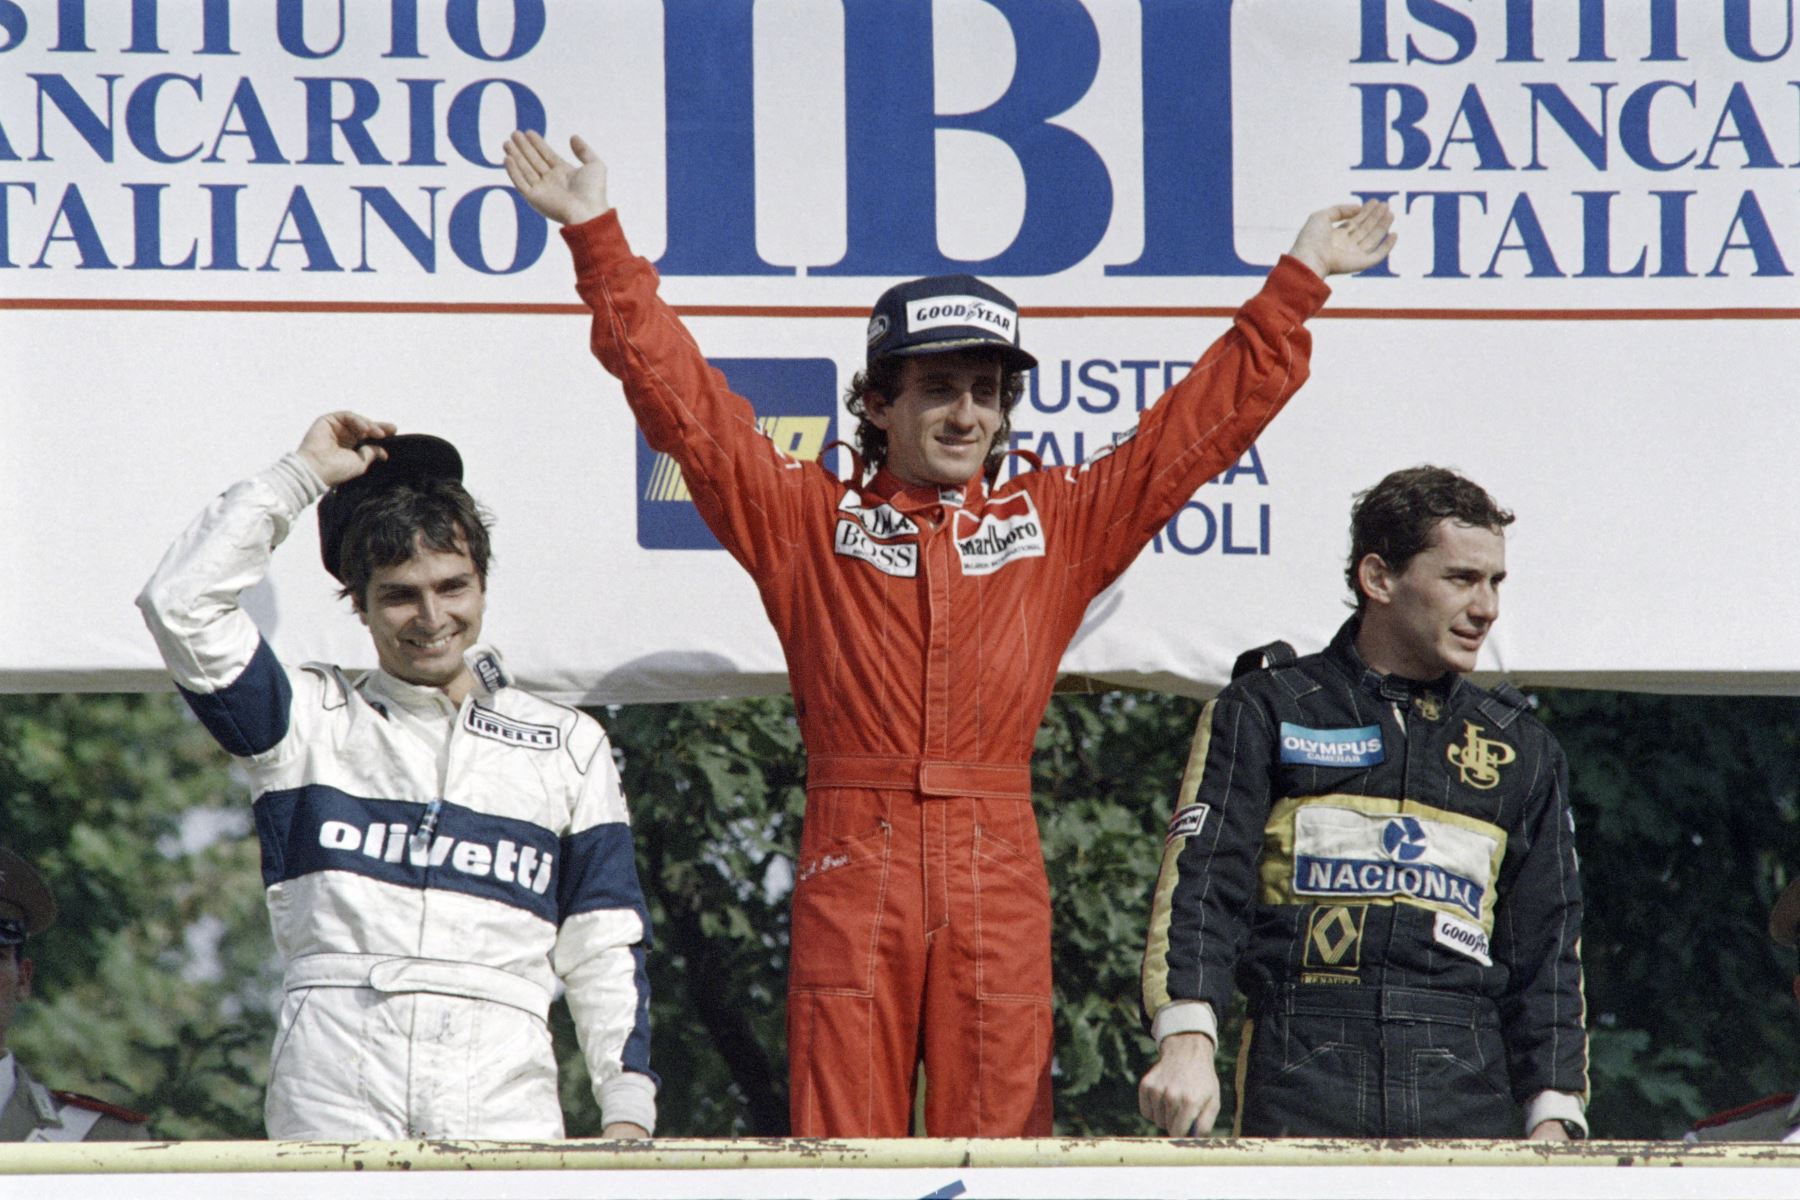 El piloto francés de Fórmula Uno McLaren, Alain Prost , celebra su victoria en el podio tras ganar el Gran Premio de Italia de Fórmula Uno el 8 de septiembre de 1985 en Monza, con el segundo brasileño Nelson Piquet  y el tercer brasileño Ayrton Senna . En 1985, Prost se convirtió en el primer campeón mundial francés de Fórmula Uno y ganó cinco de los dieciséis Grandes Premios durante la temporada.
Foto: AFP